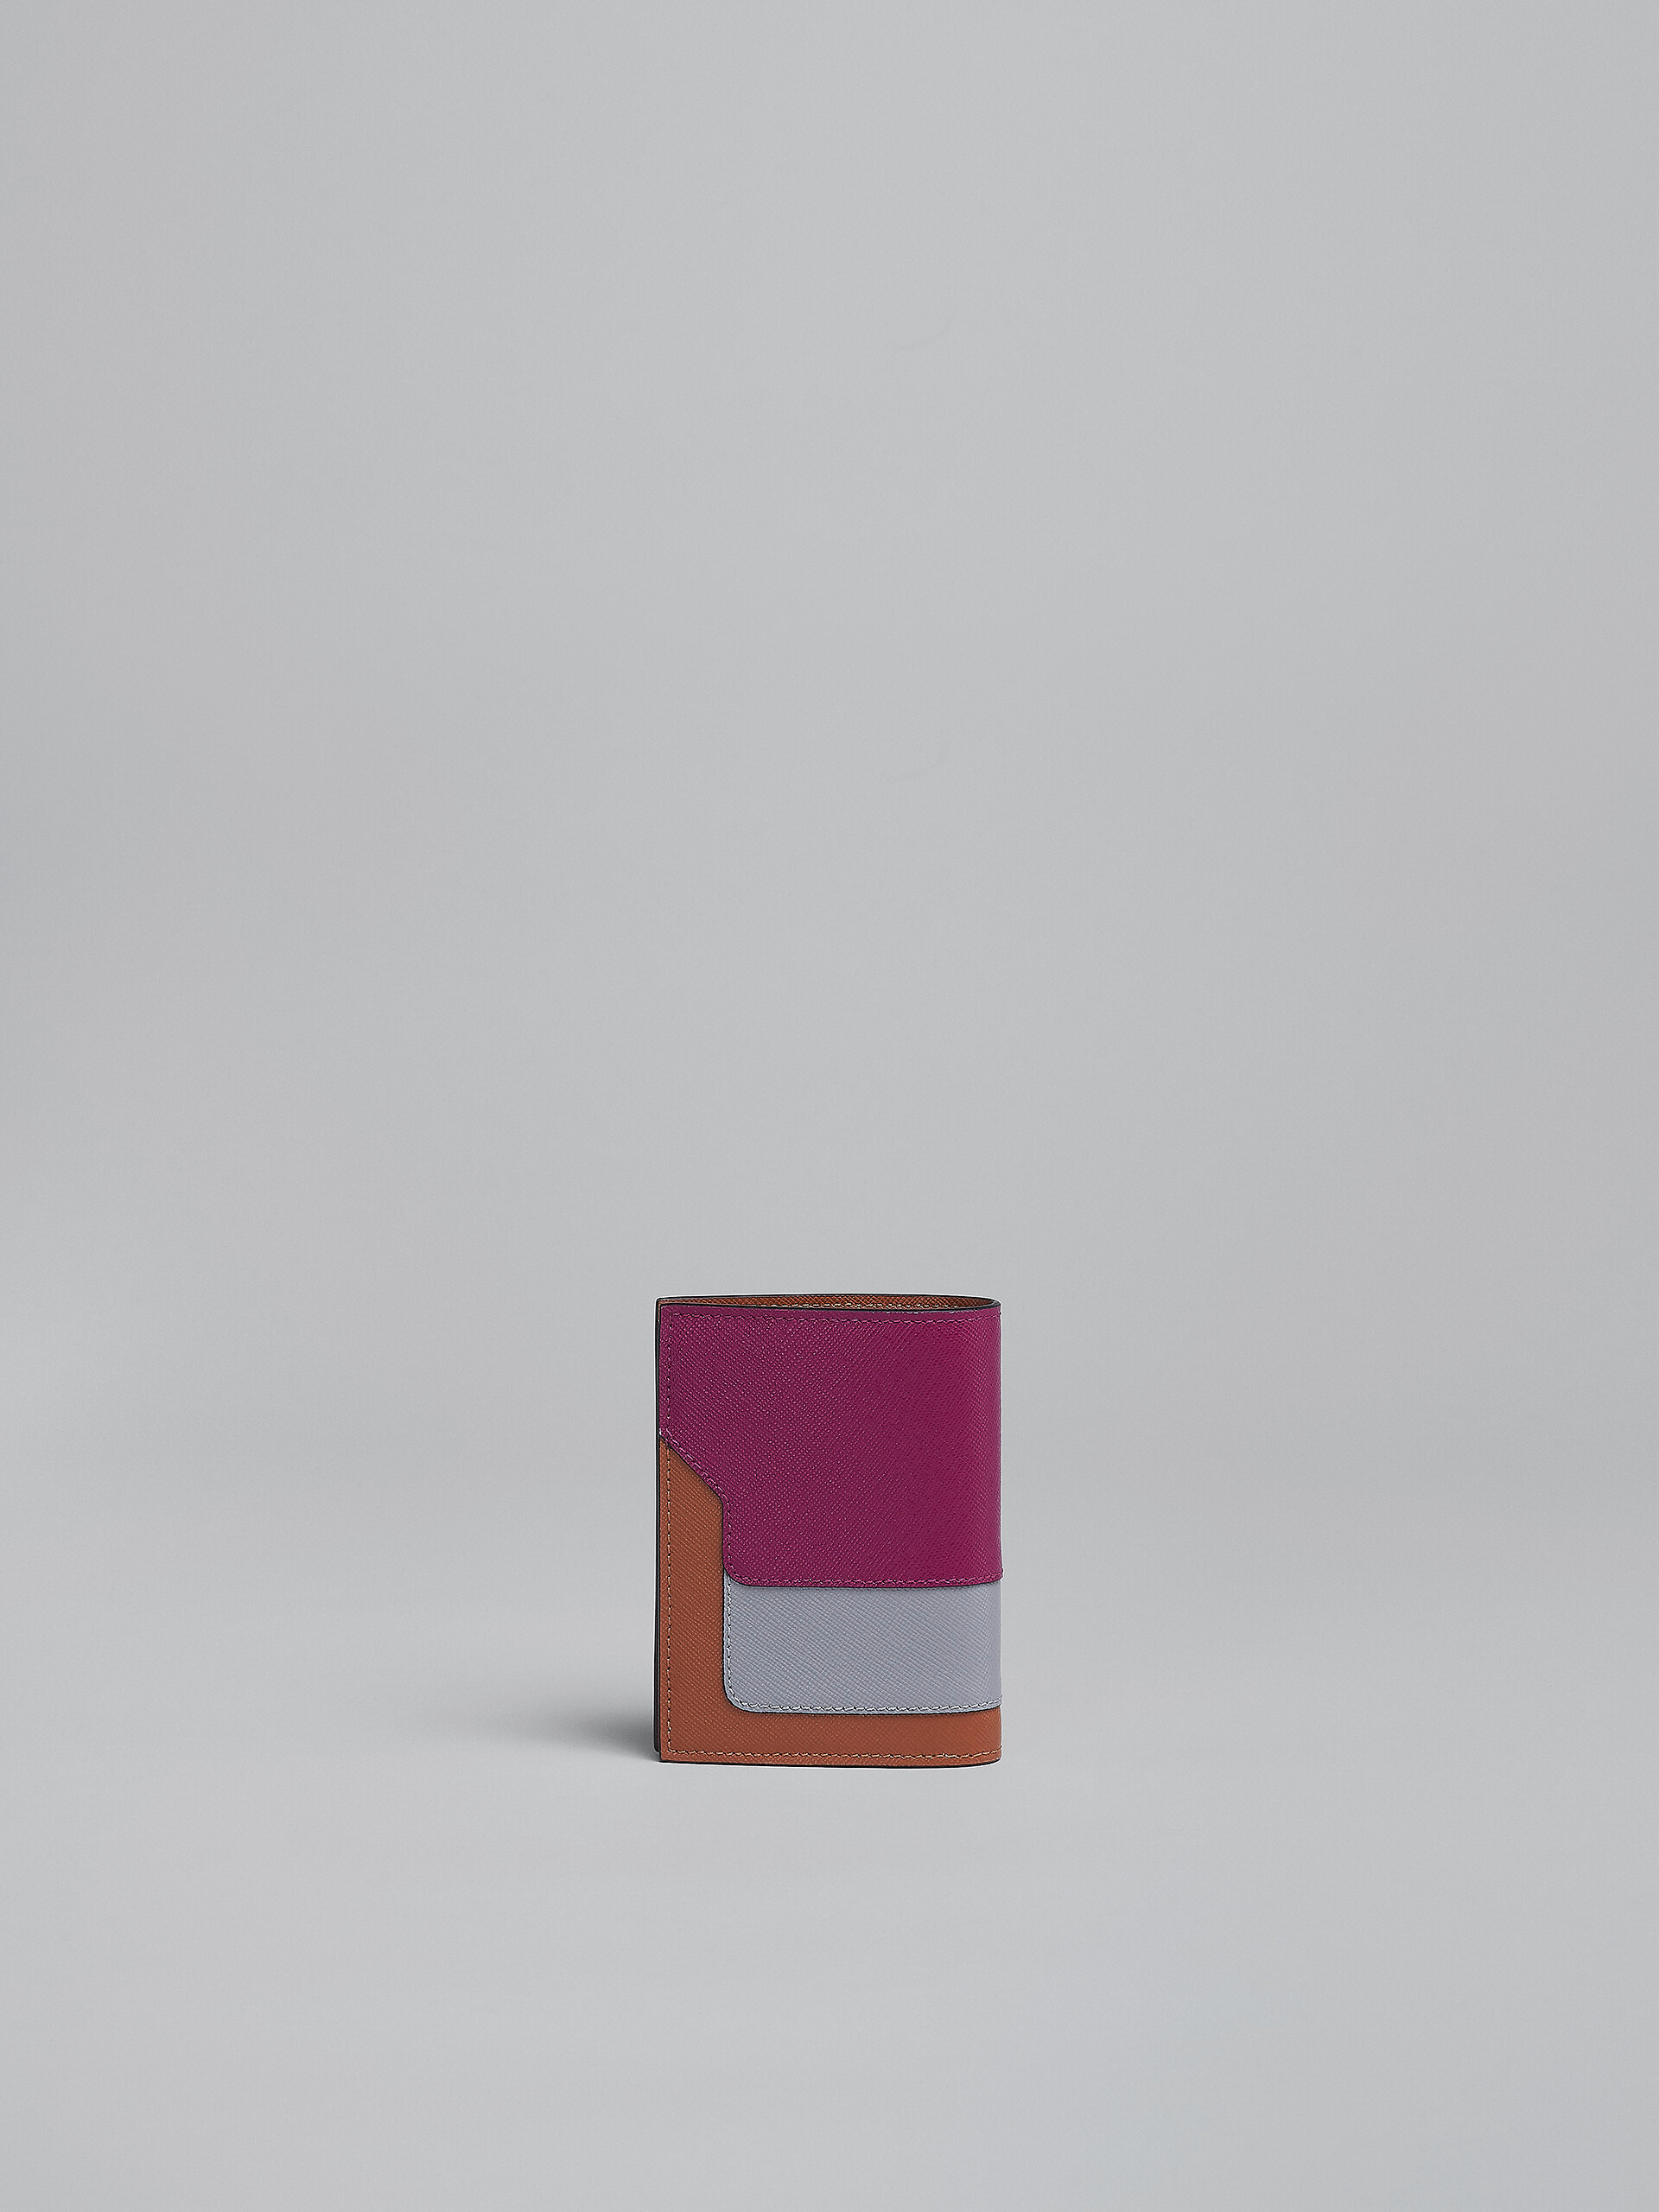 Portafoglio bi-fold in saffiano viola grigio e marrone - Portafogli - Image 3